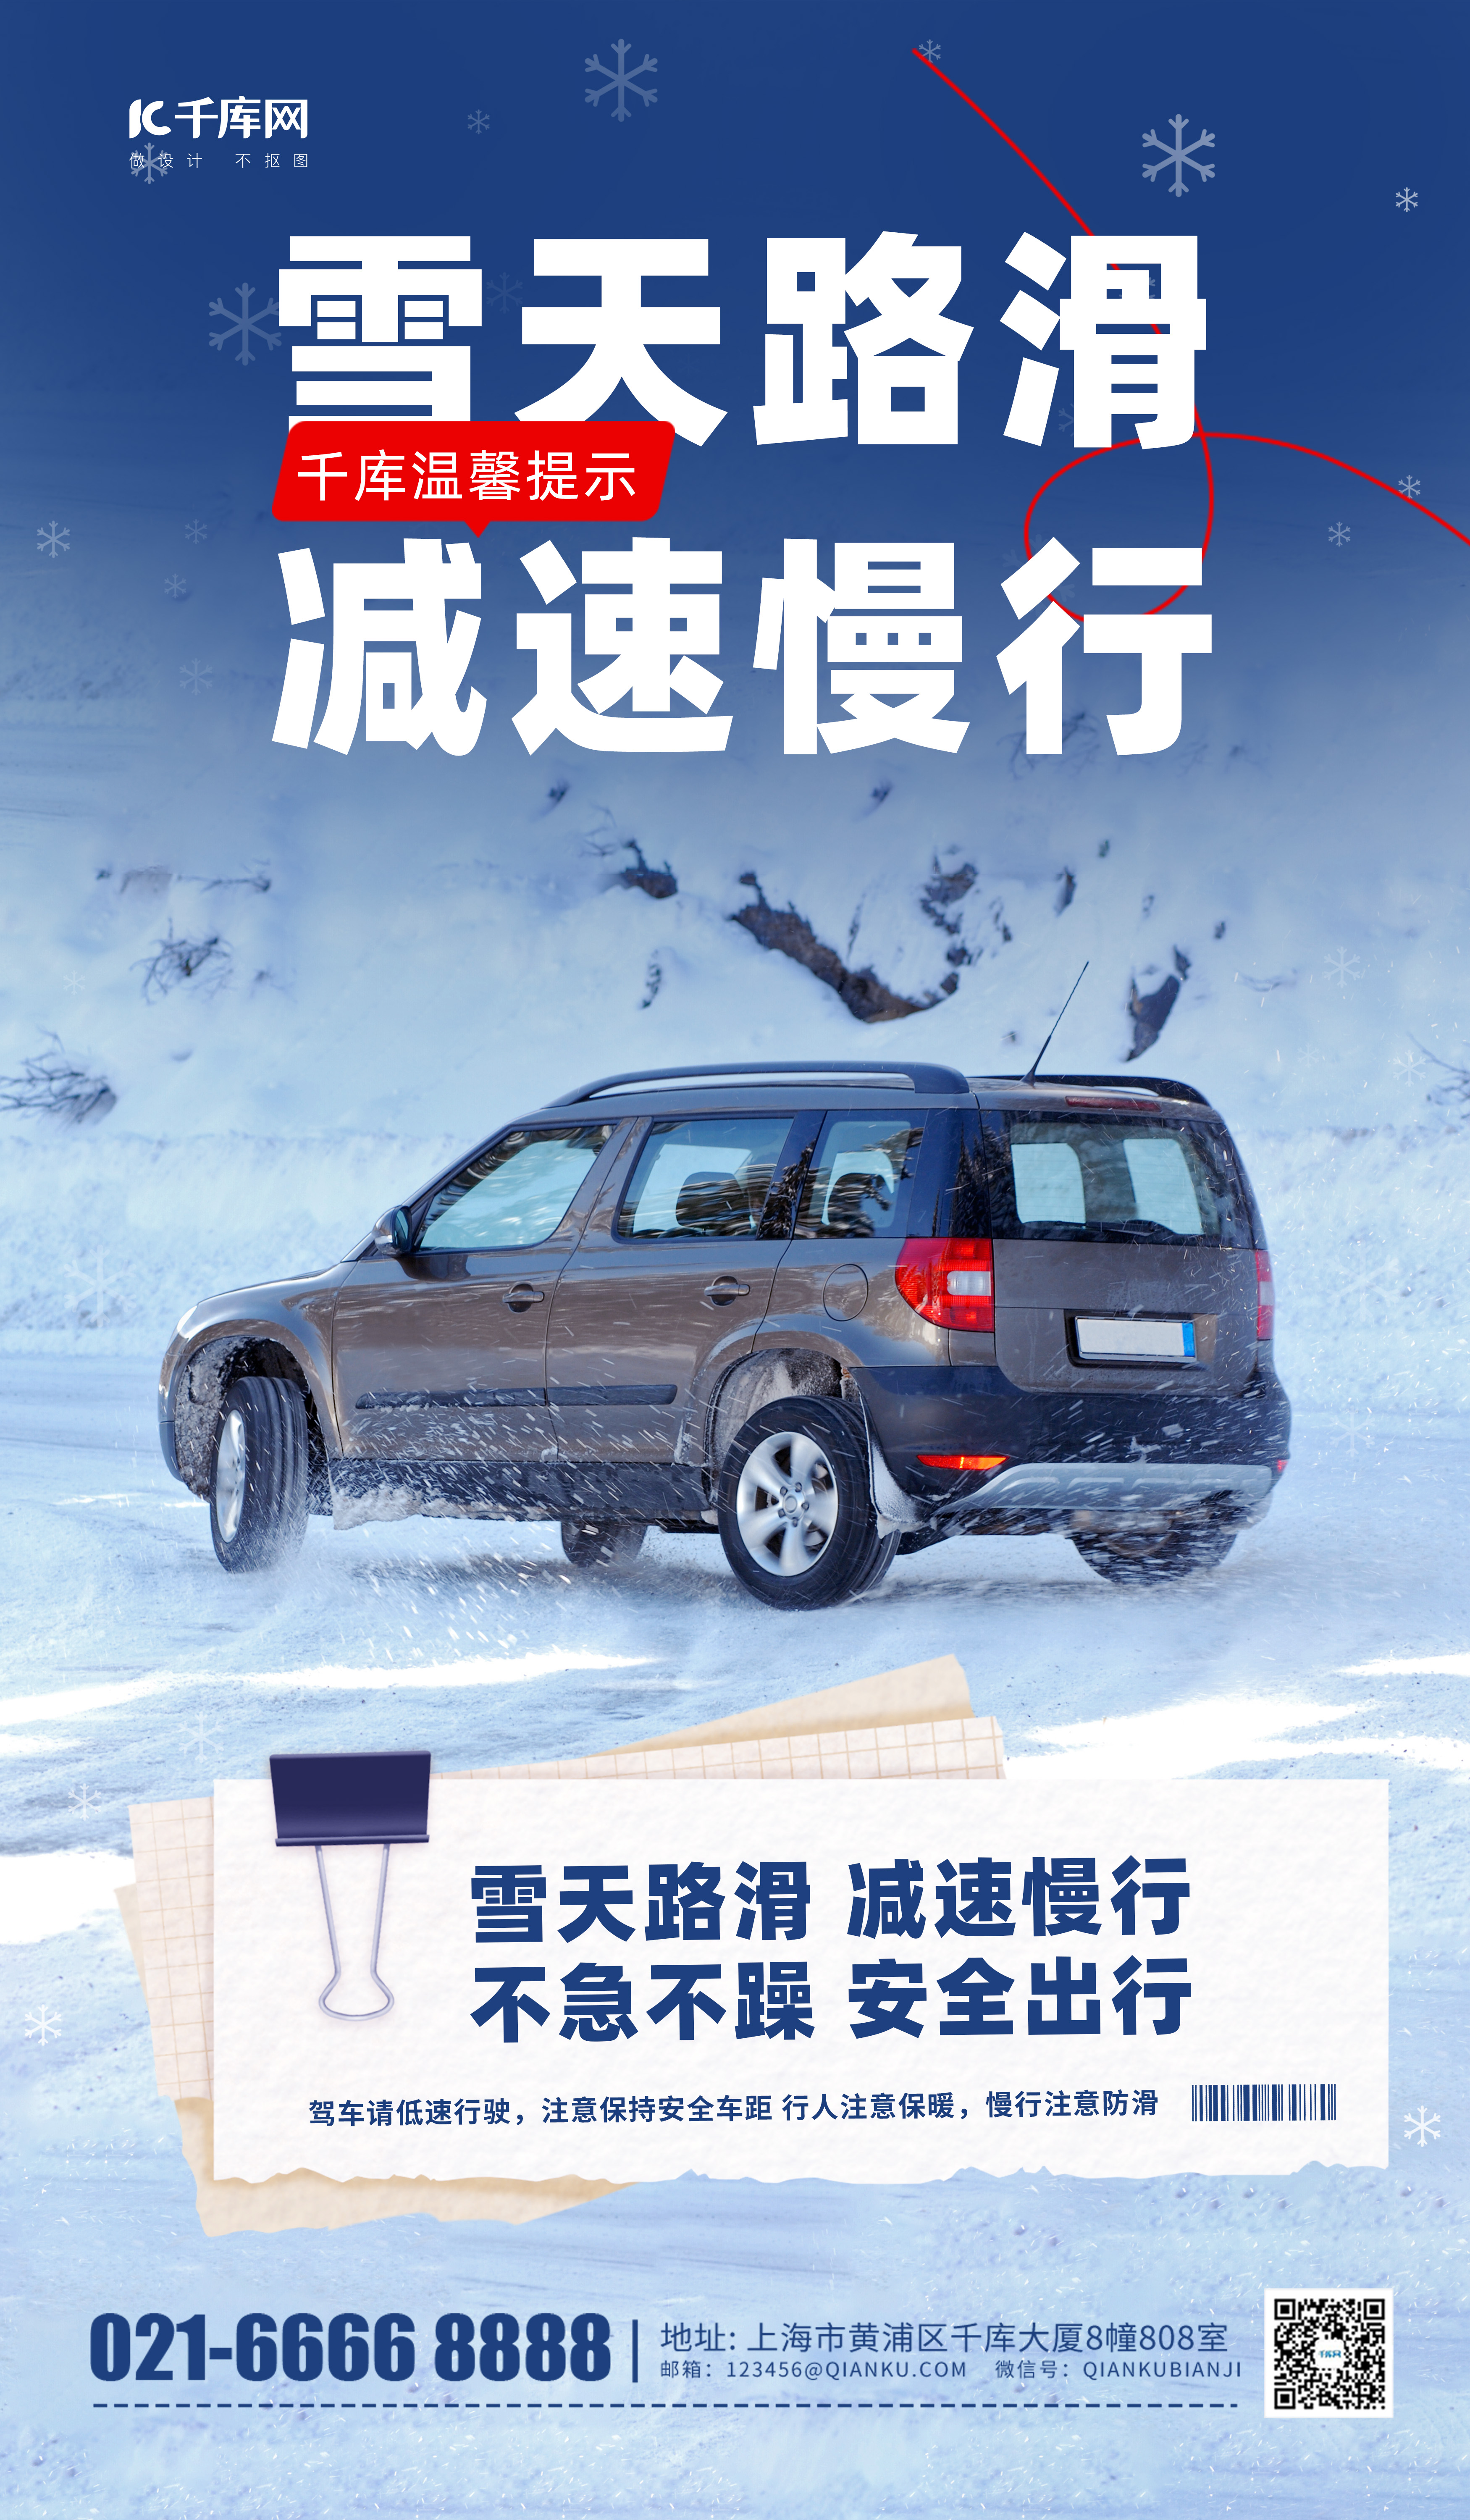 雪天路滑减速慢行提示蓝色摄影风广告宣传海报图片